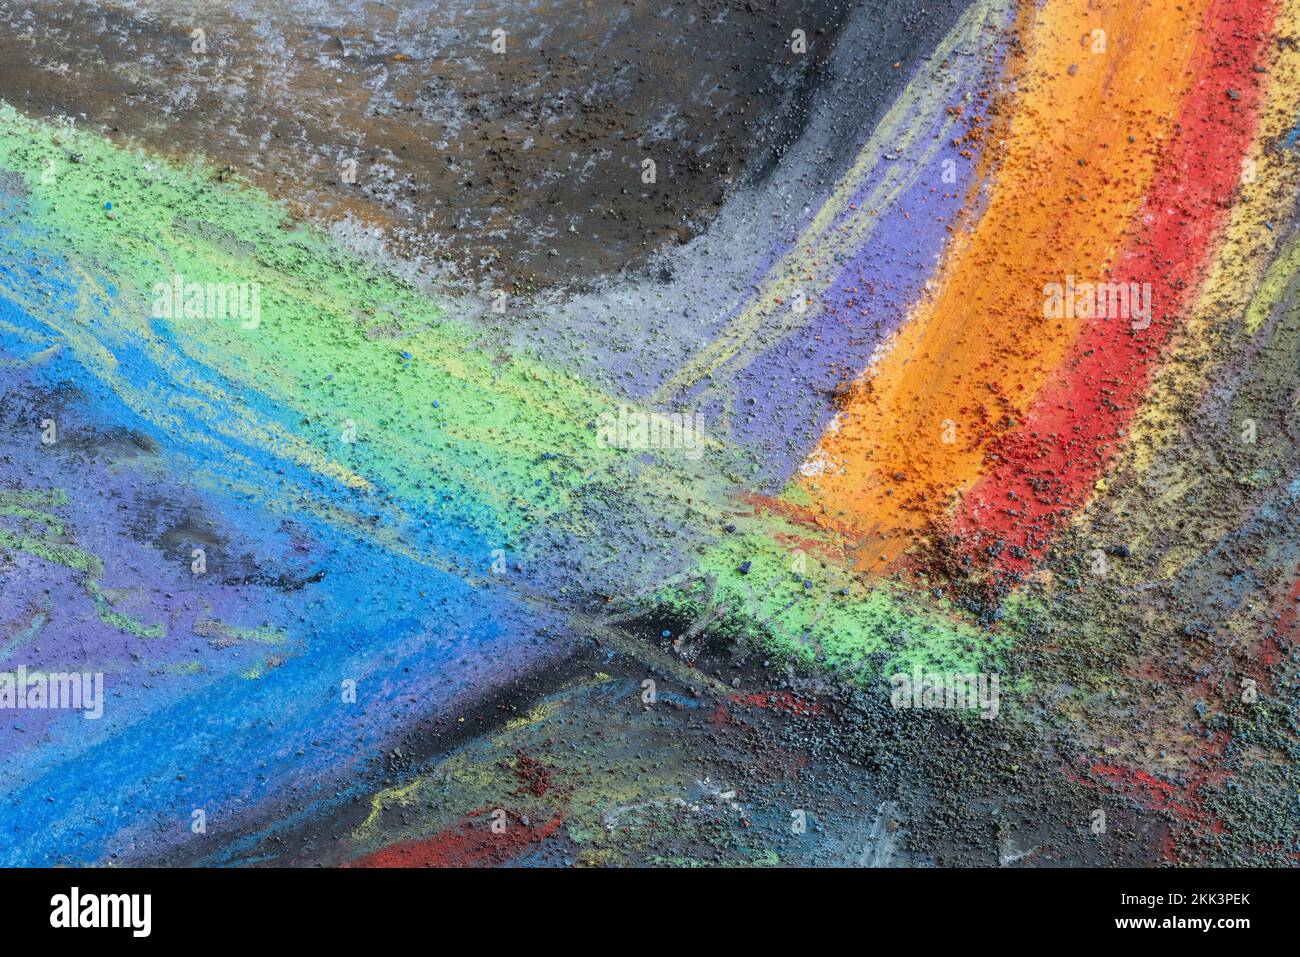 L'artiste a dessiné un arc-en-ciel créatif, mais s'est fracturé et s'est entrecouisé avec la poussière accumulée dans les pastels craies sèches Banque D'Images